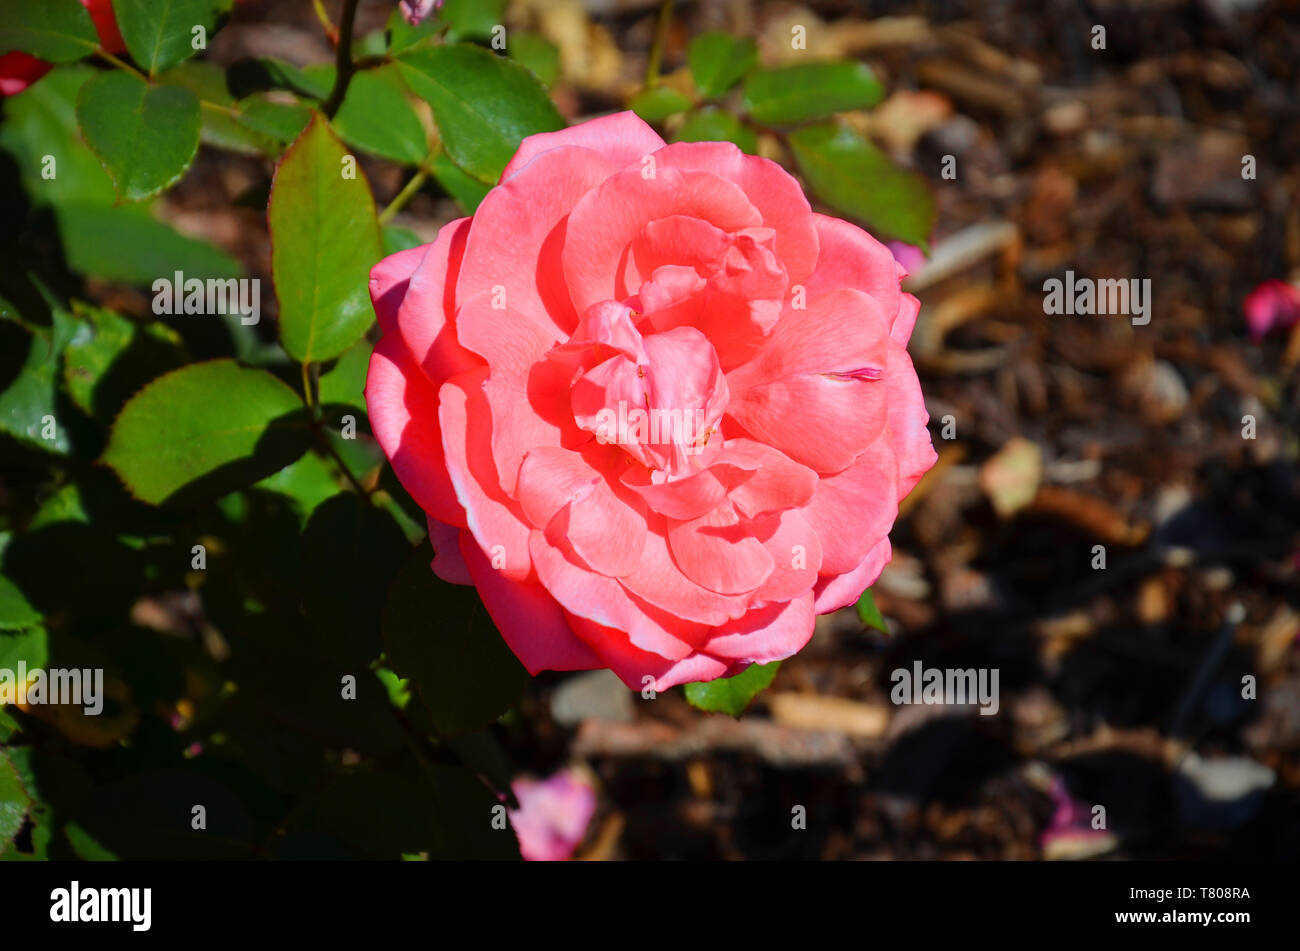 Amazing close up photographie des hybrides de thé rose rose, Rosaceae, prises d'en haut pendant la saison du printemps. L'arrière-plan de la photo est floue, marron et vert. Banque D'Images